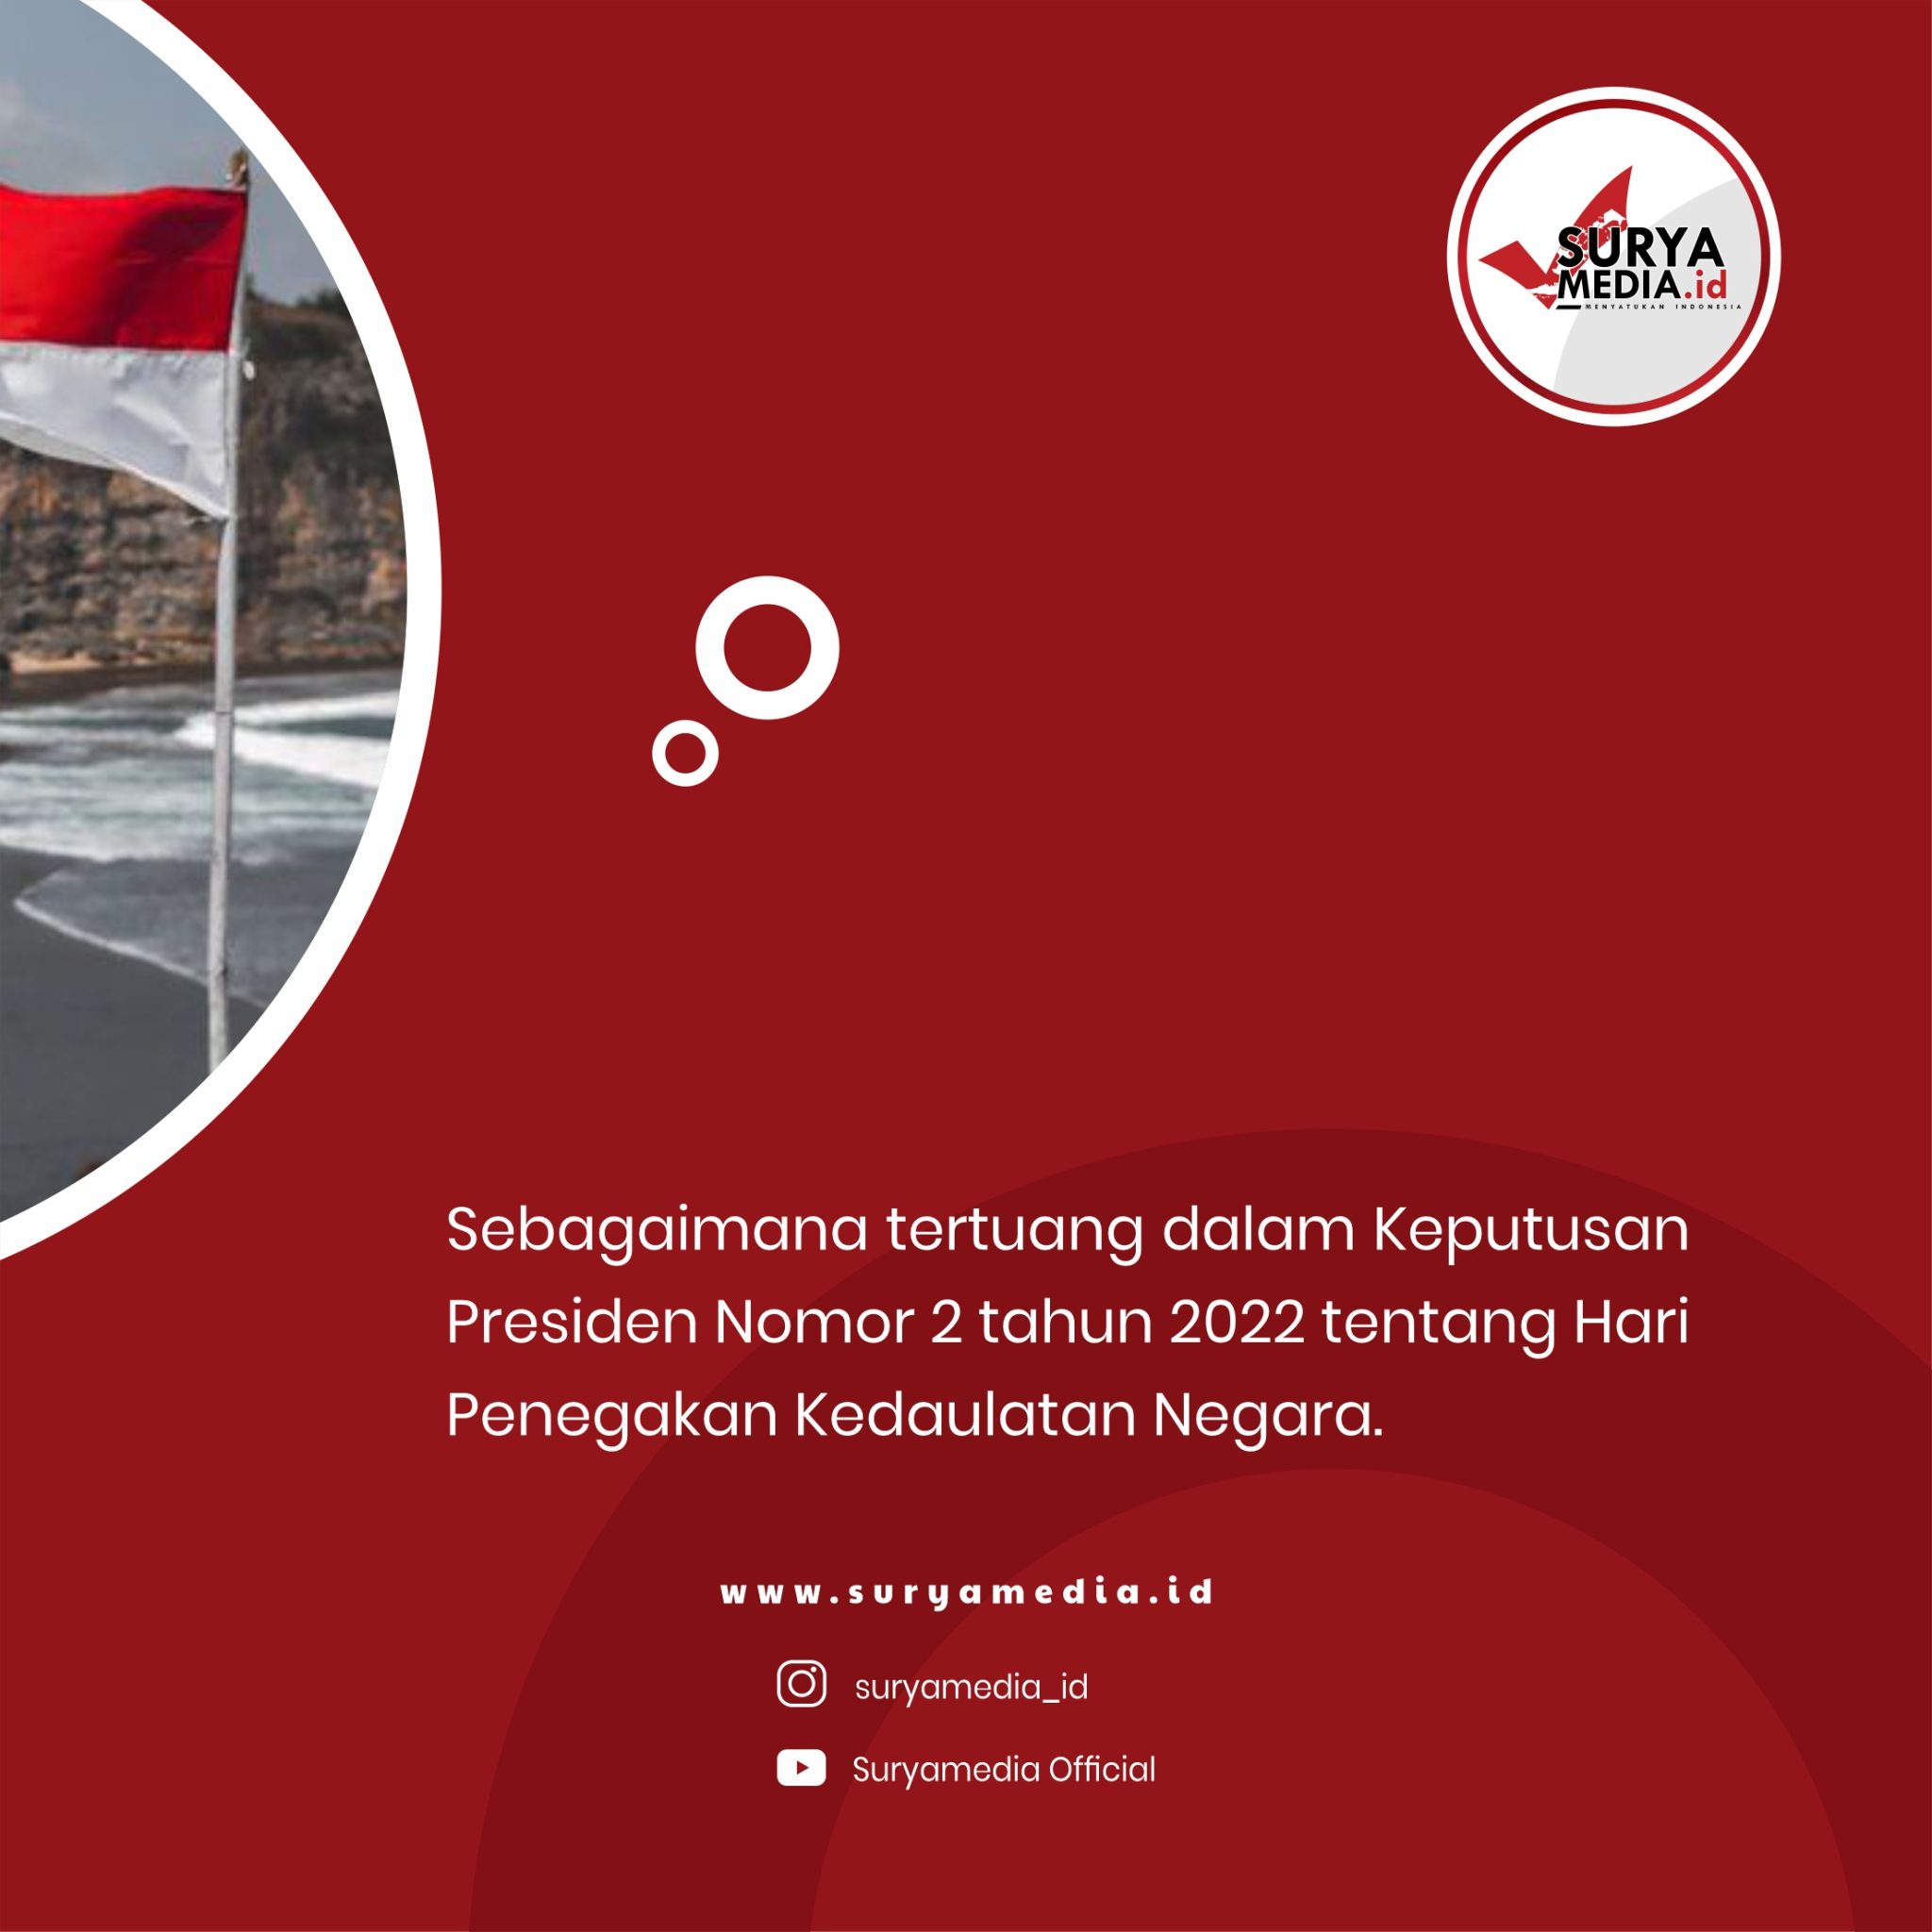 Jokowi tetapkan 1 maret jadi hari penegakan kedaulatan negara